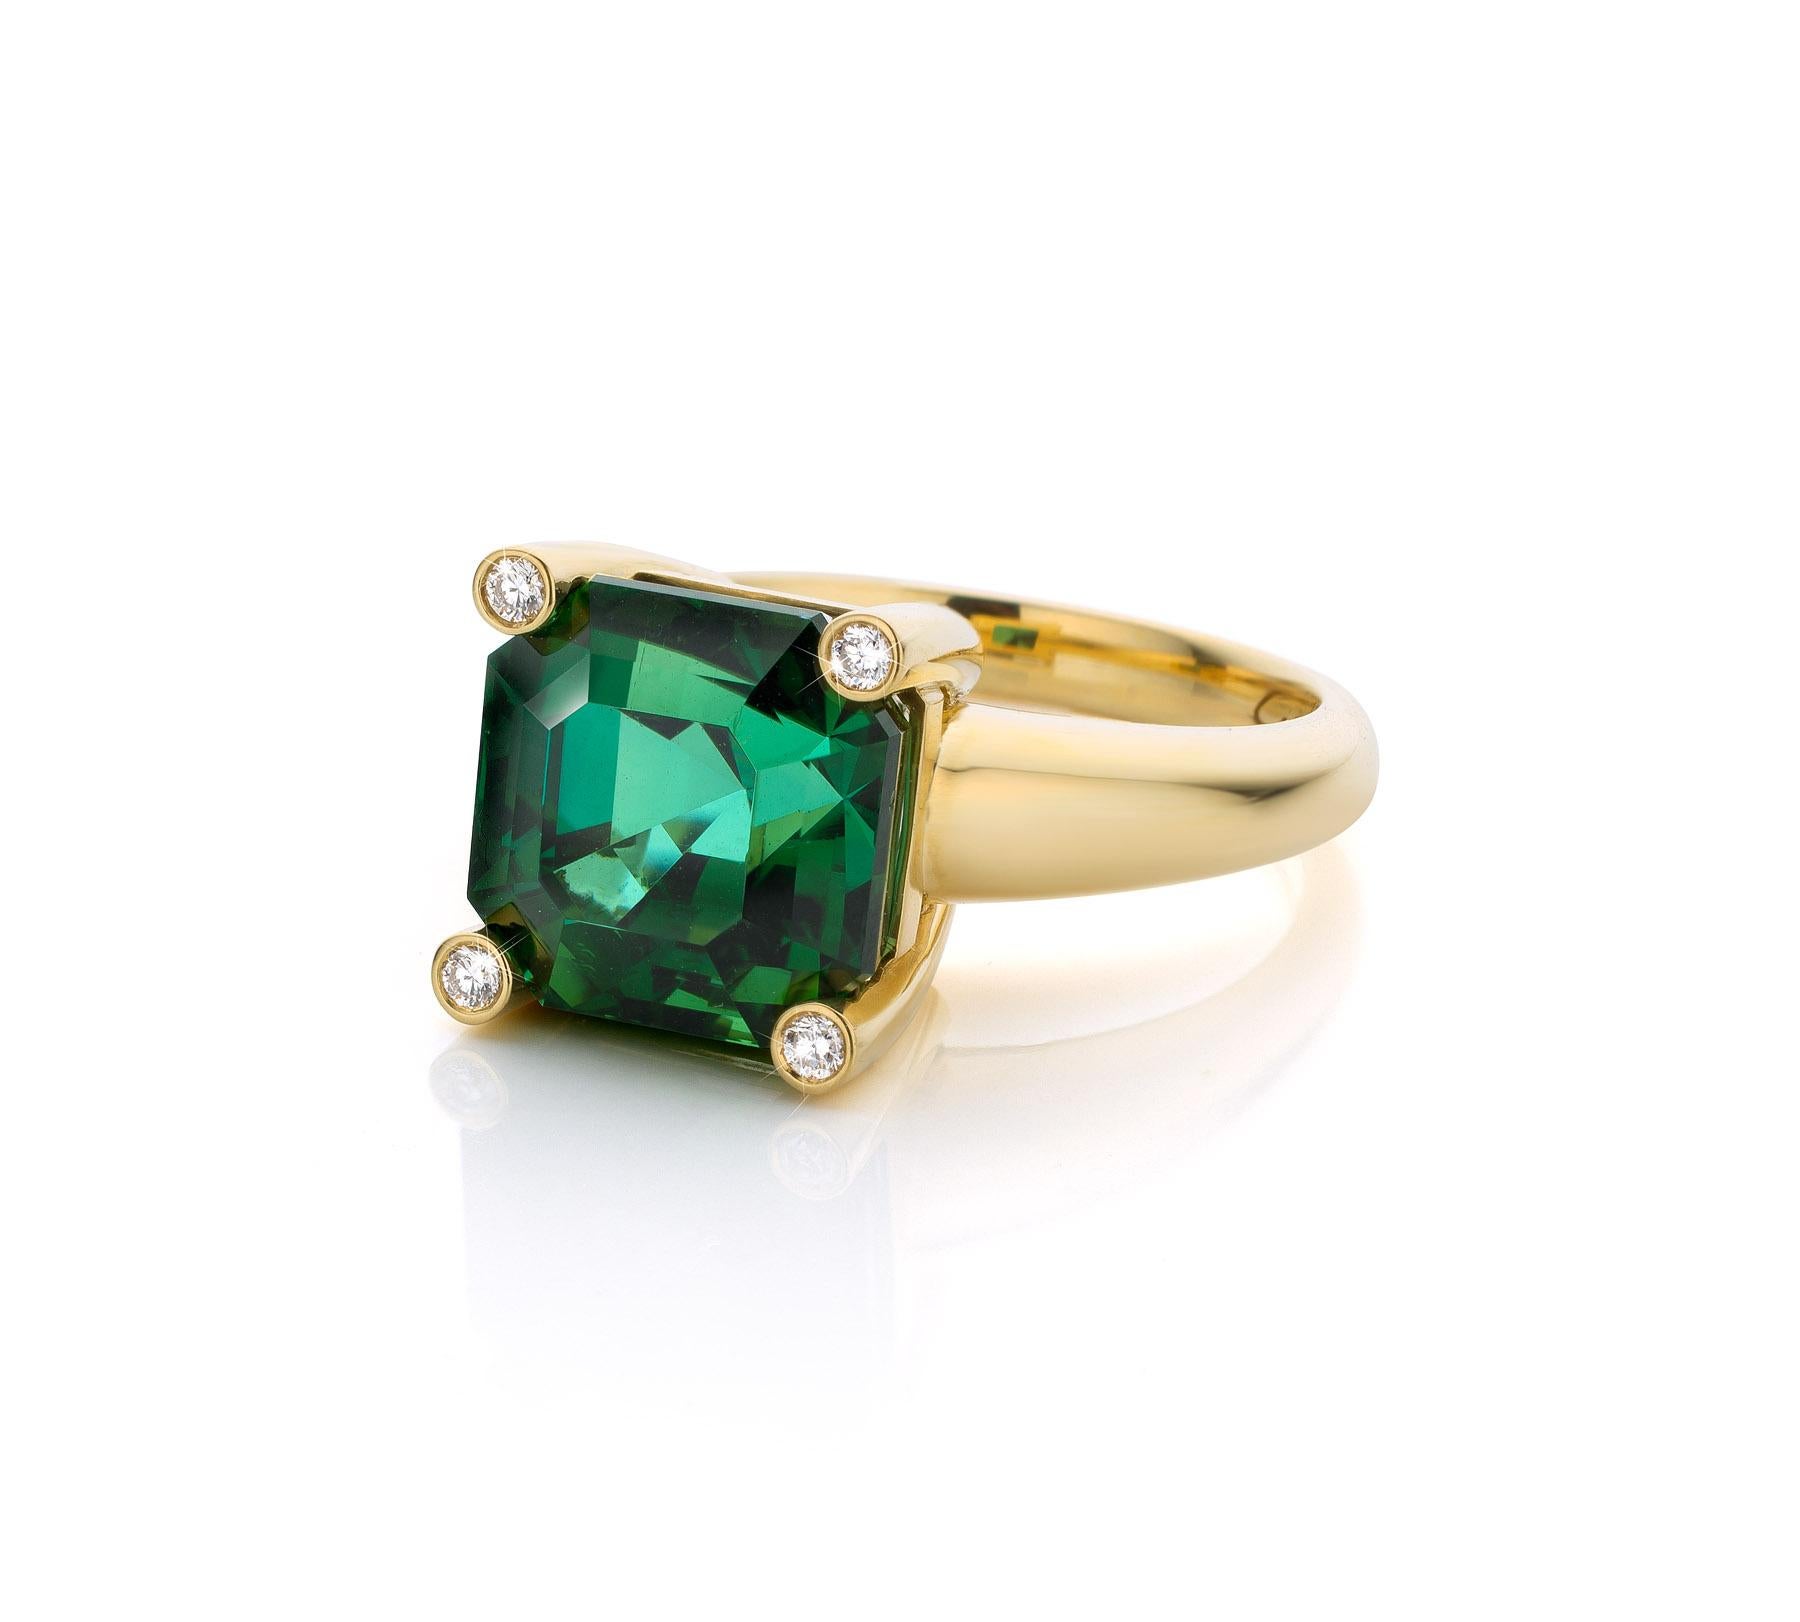 Brilliant Cut Cober “Green Assher” 9. 5 Carat Tourmaline and 4 x 0.005 Carat Diamonds Ring For Sale